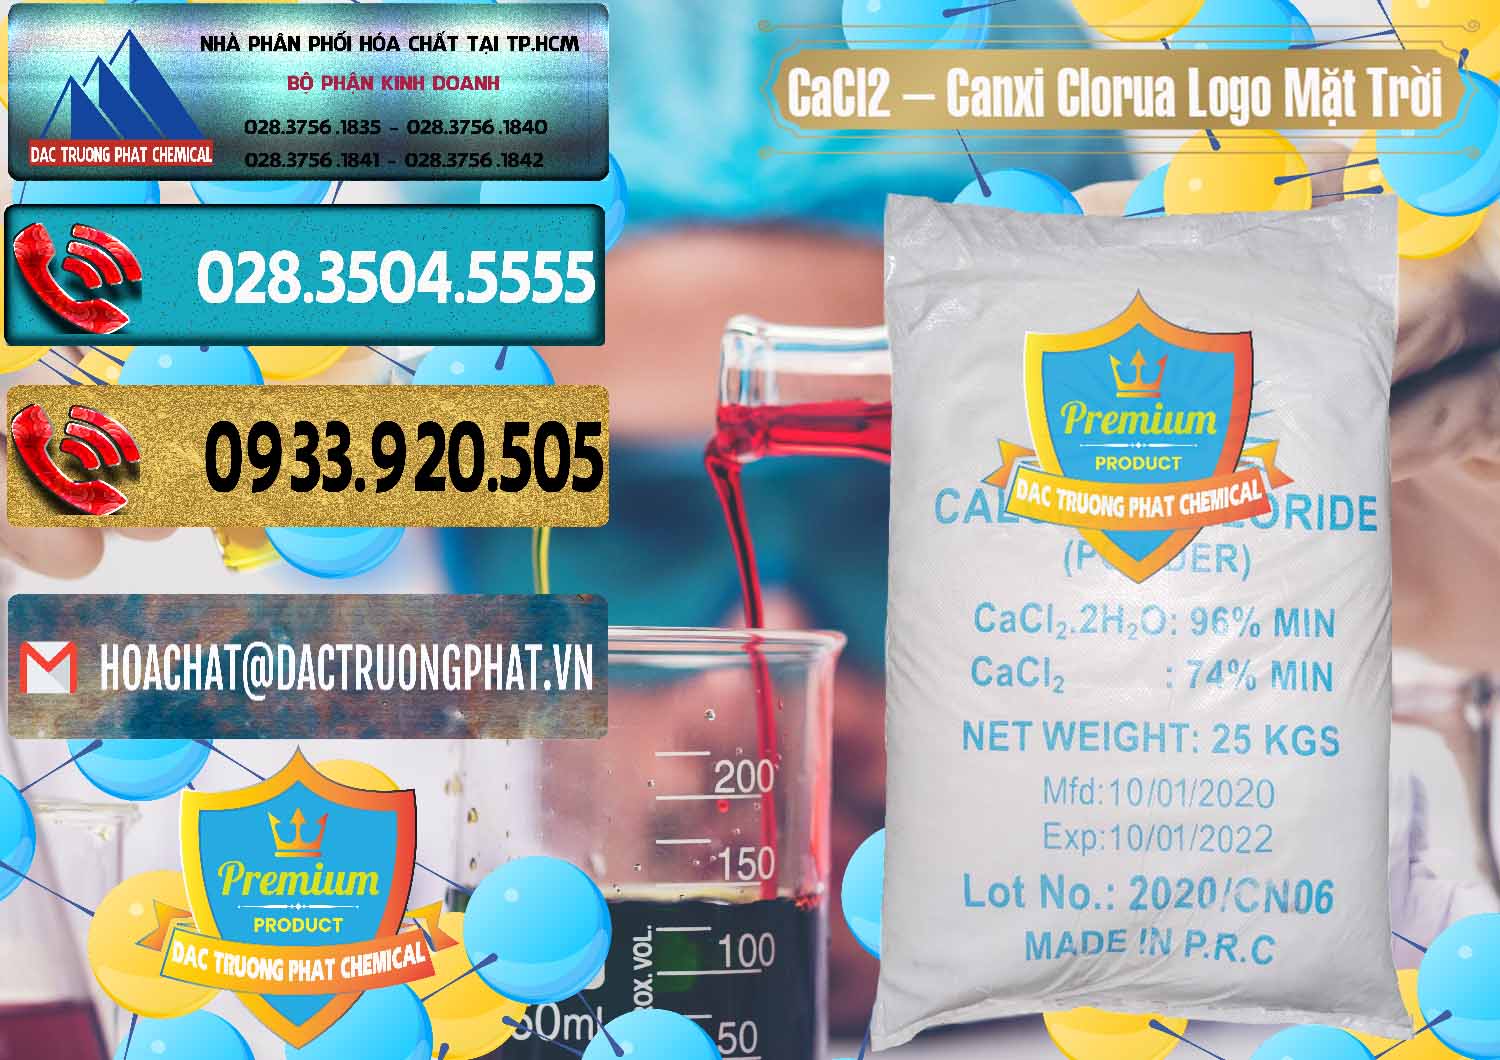 Nhà phân phối - bán CaCl2 – Canxi Clorua 96% Logo Mặt Trời Trung Quốc China - 0041 - Cty kinh doanh ( cung cấp ) hóa chất tại TP.HCM - hoachatdetnhuom.com